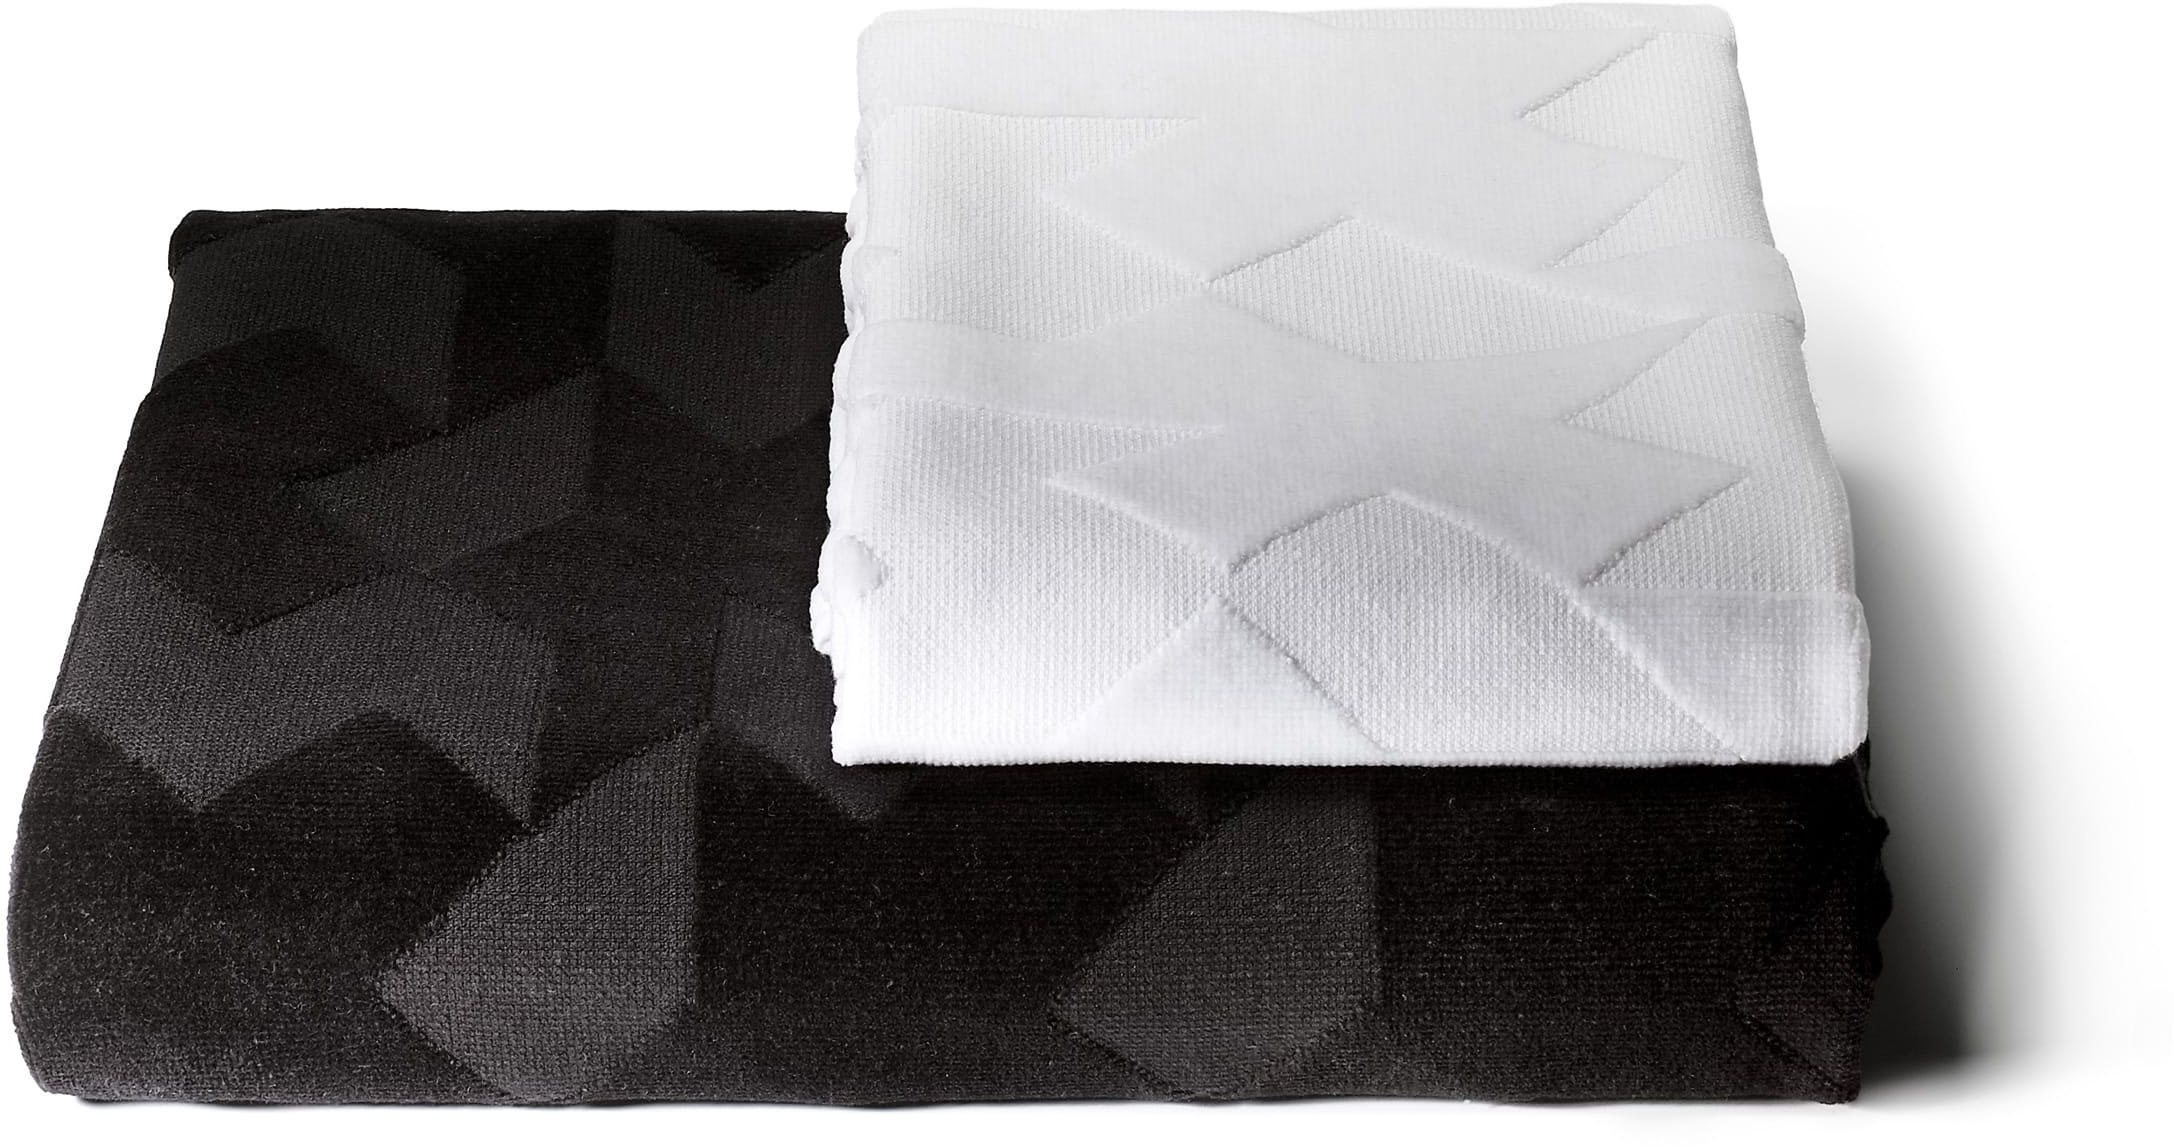 Billede af Assos Towel Set - Håndklædesæt